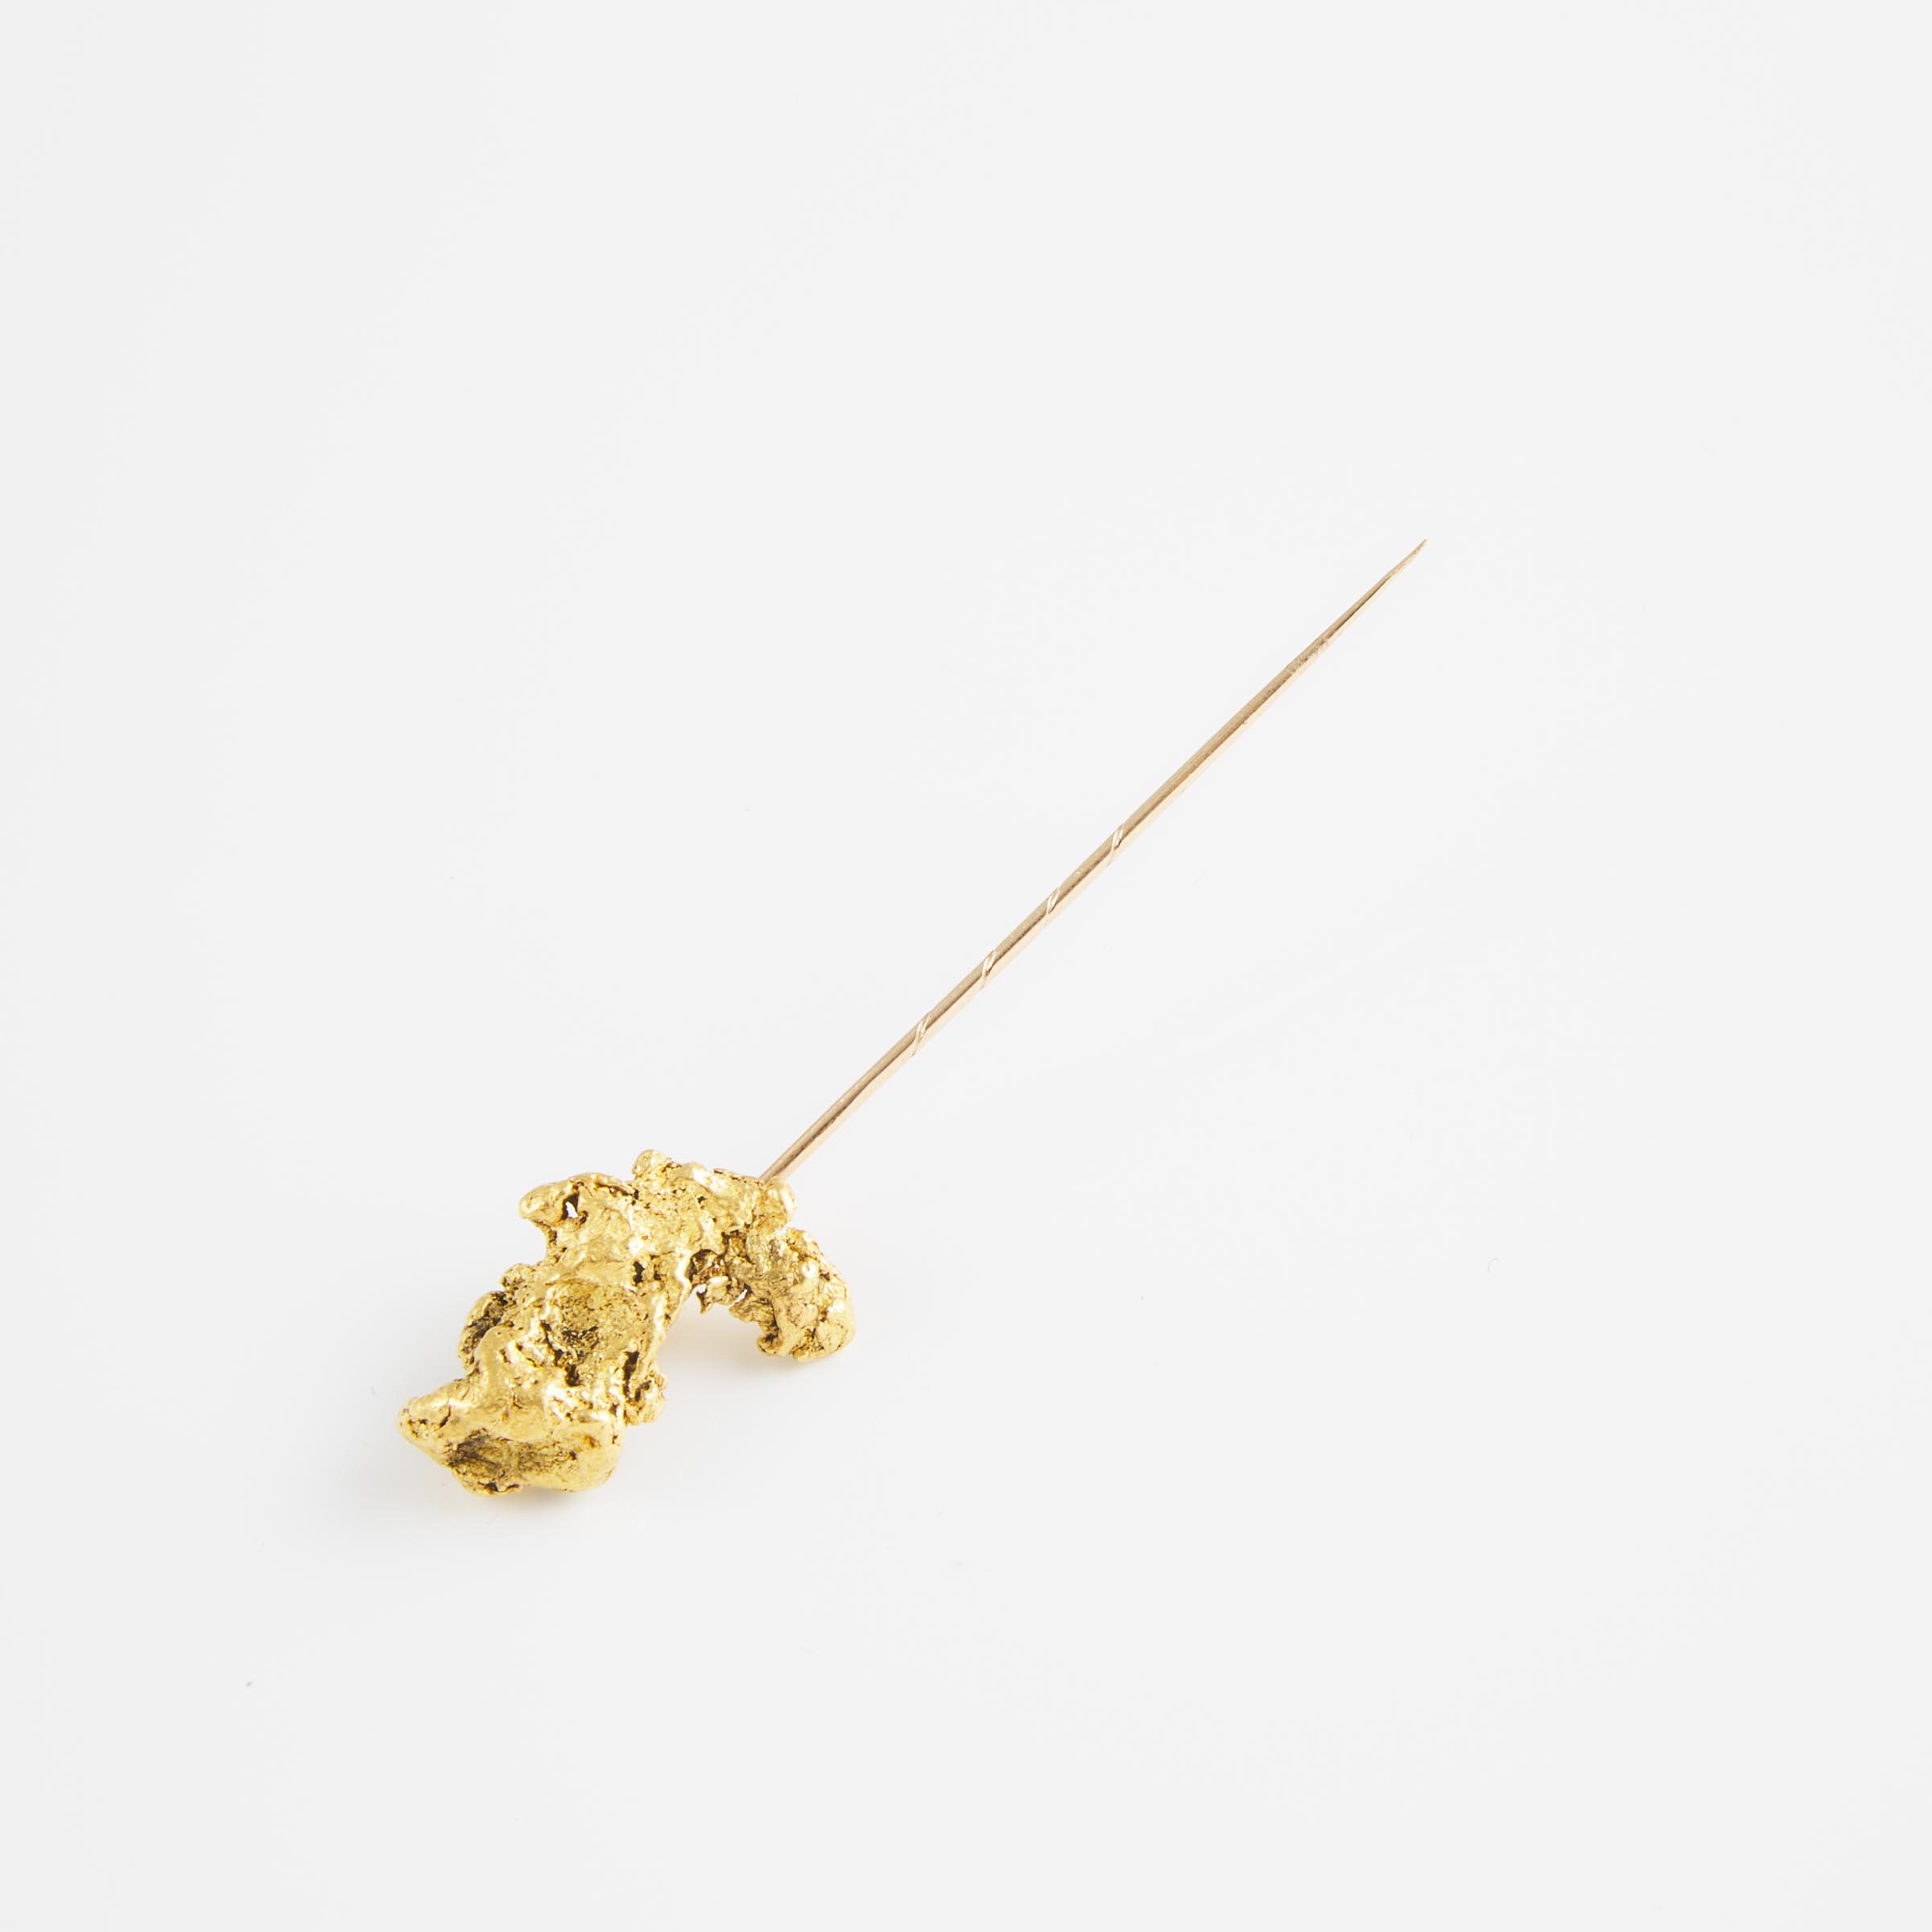 Gold Nugget Stickpin